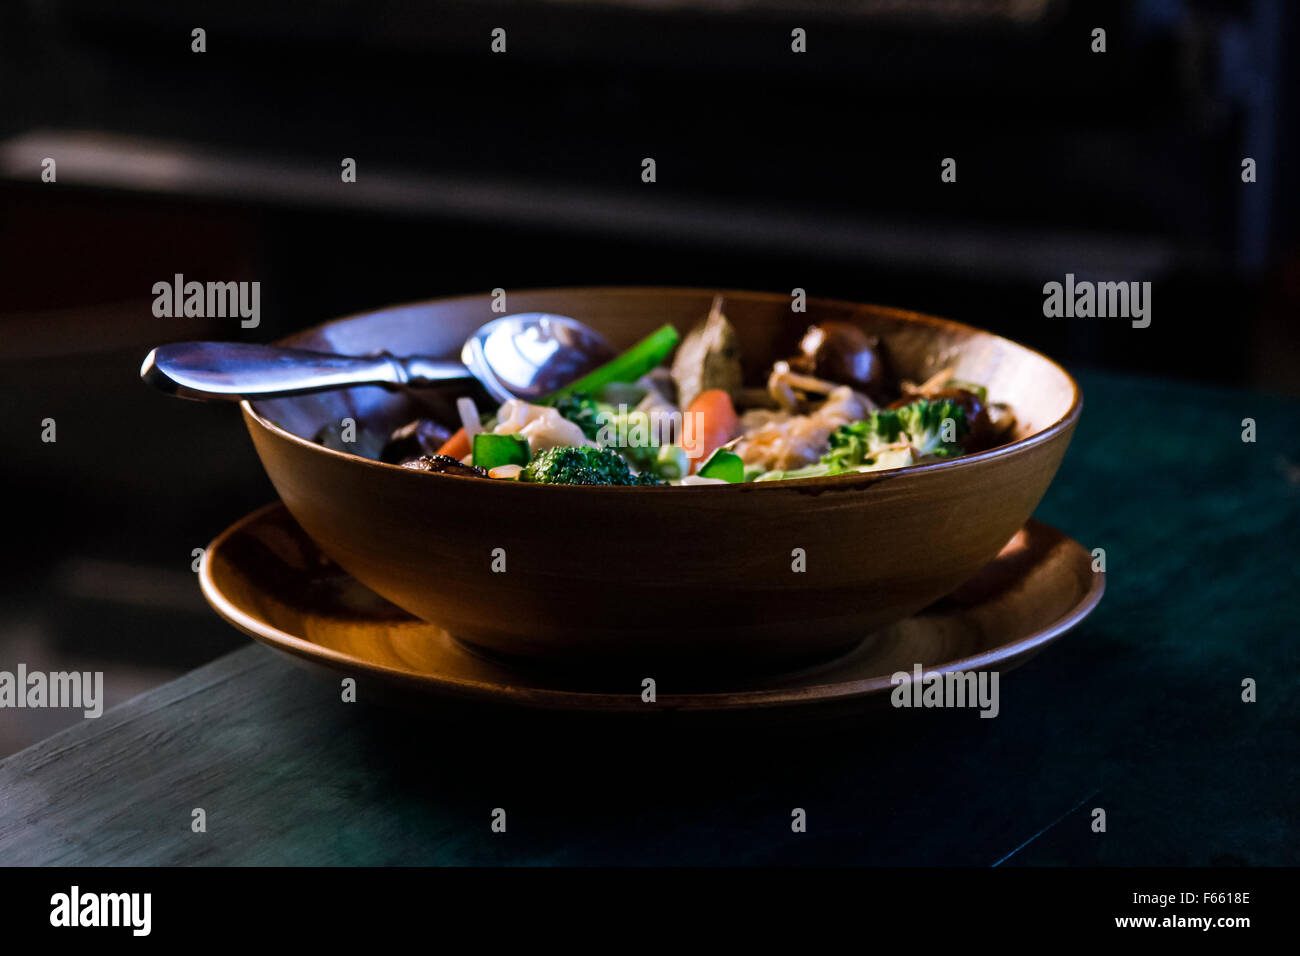 Blick auf Gemüse Suppe oder Eintopf in einem braun oder hellbraun Schüssel in einem Teller, auf einem grünlich-blau Holz Korn in der rustikalen Umgebung Stockfoto